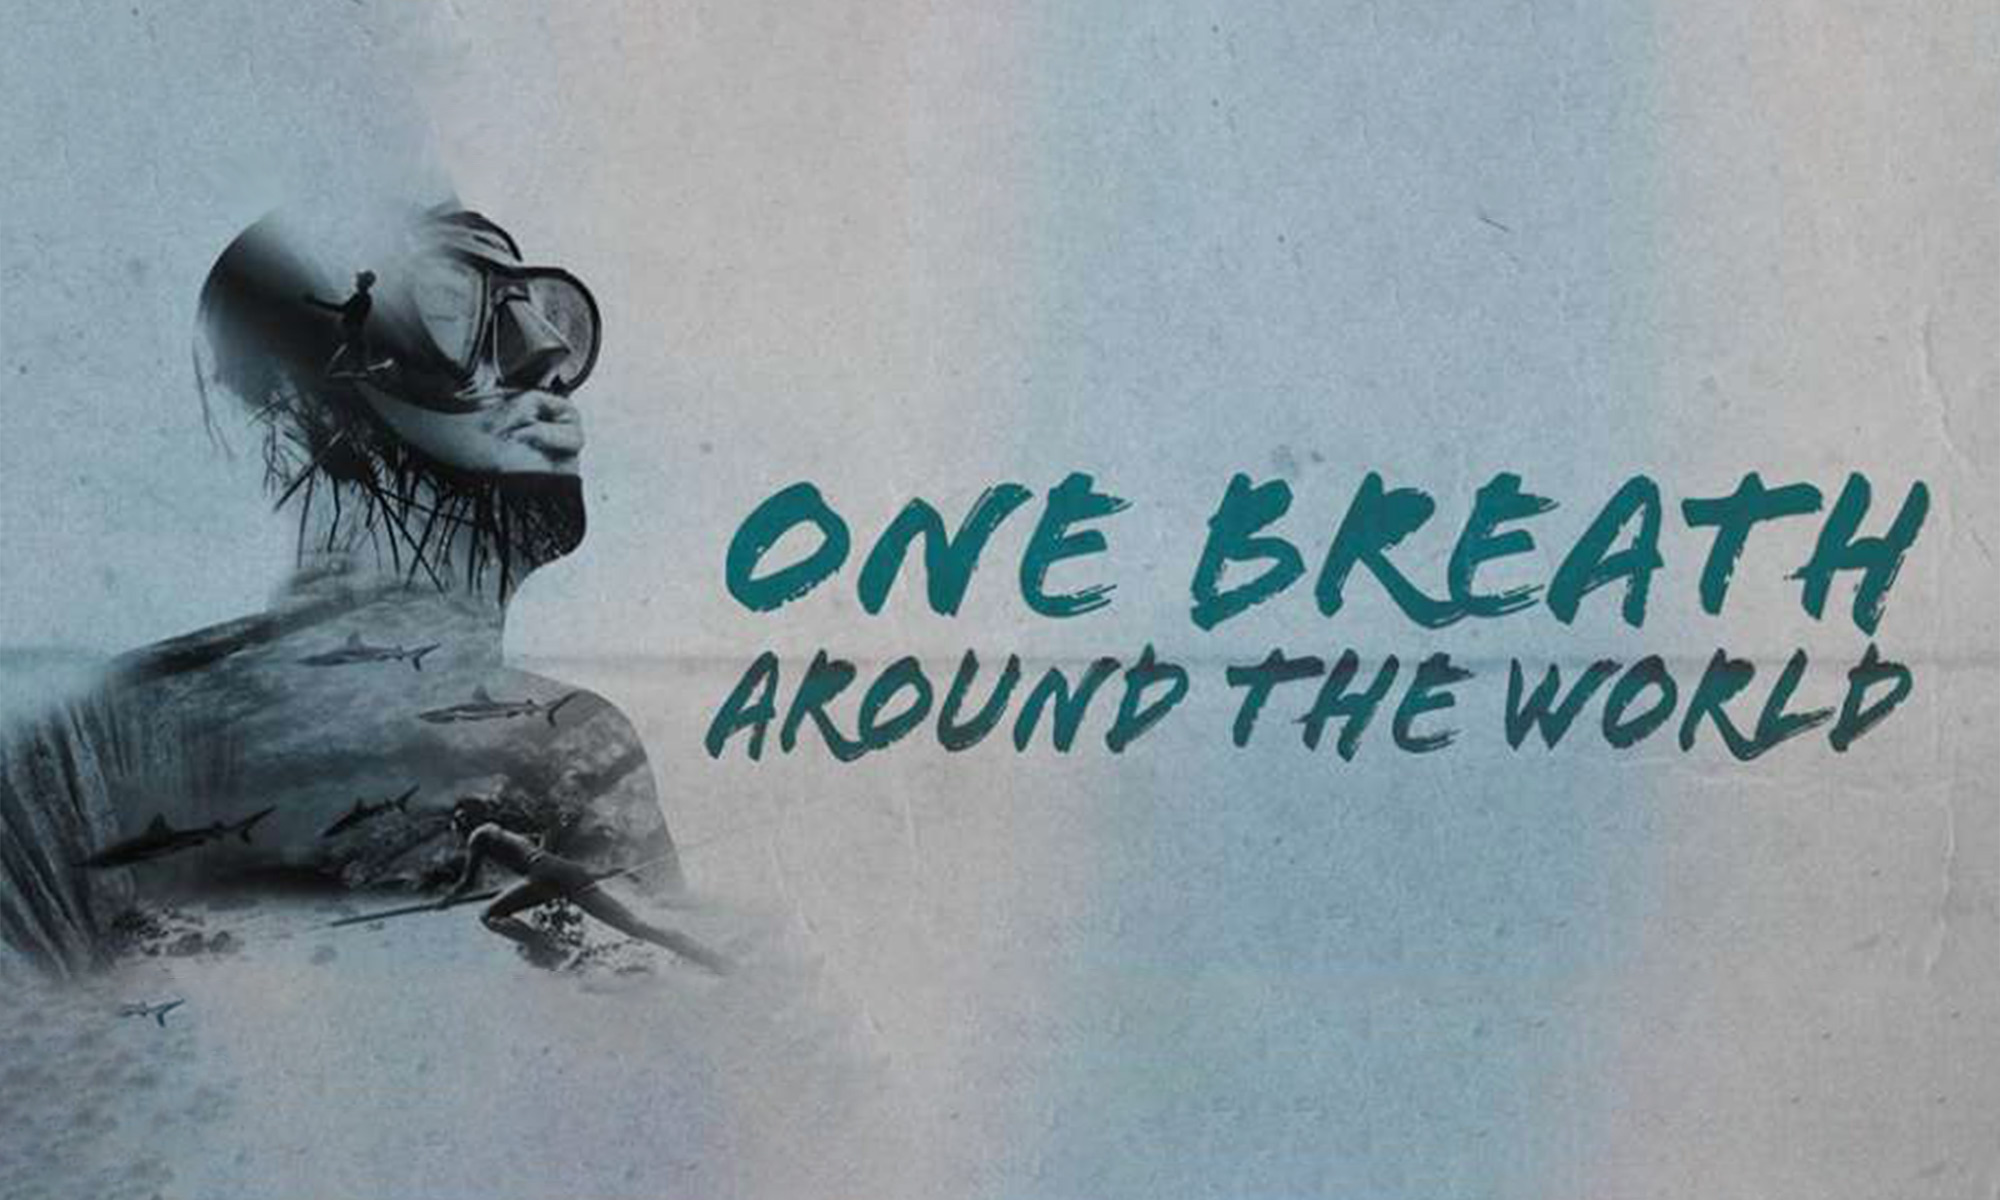 One breath around the world